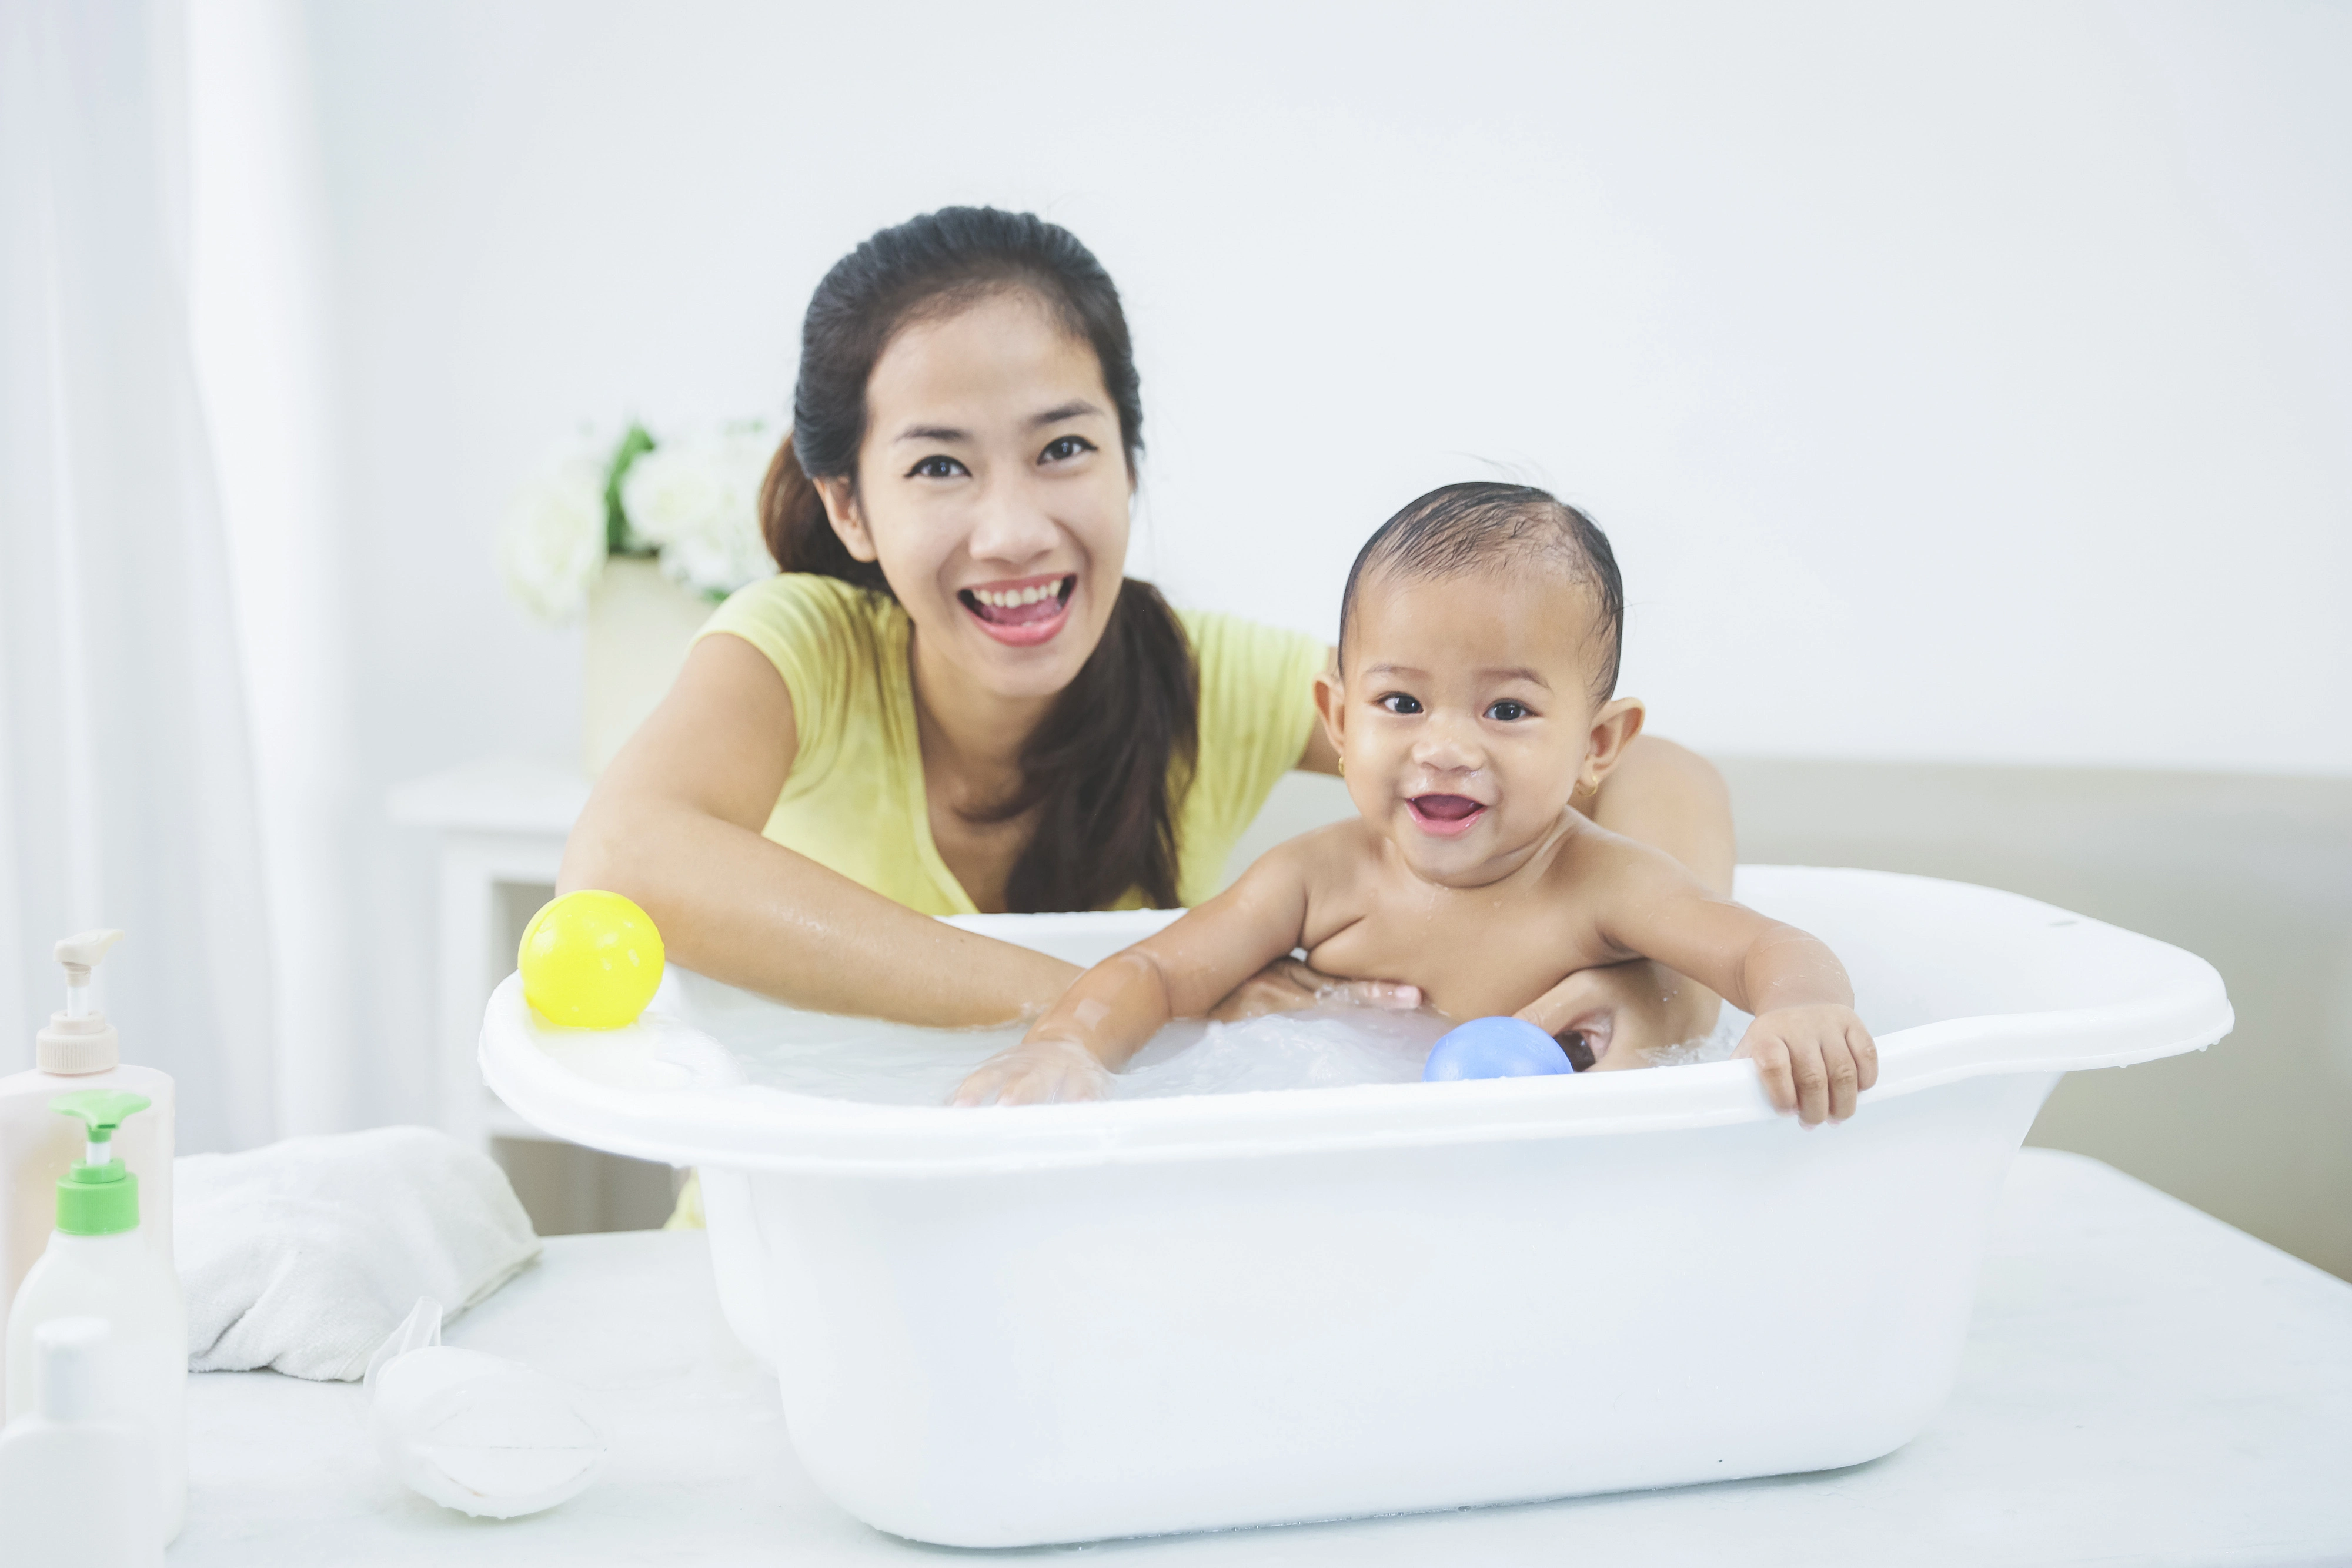 6個月以上的嬰兒可按醫生指示以稀釋漂白水浸浴